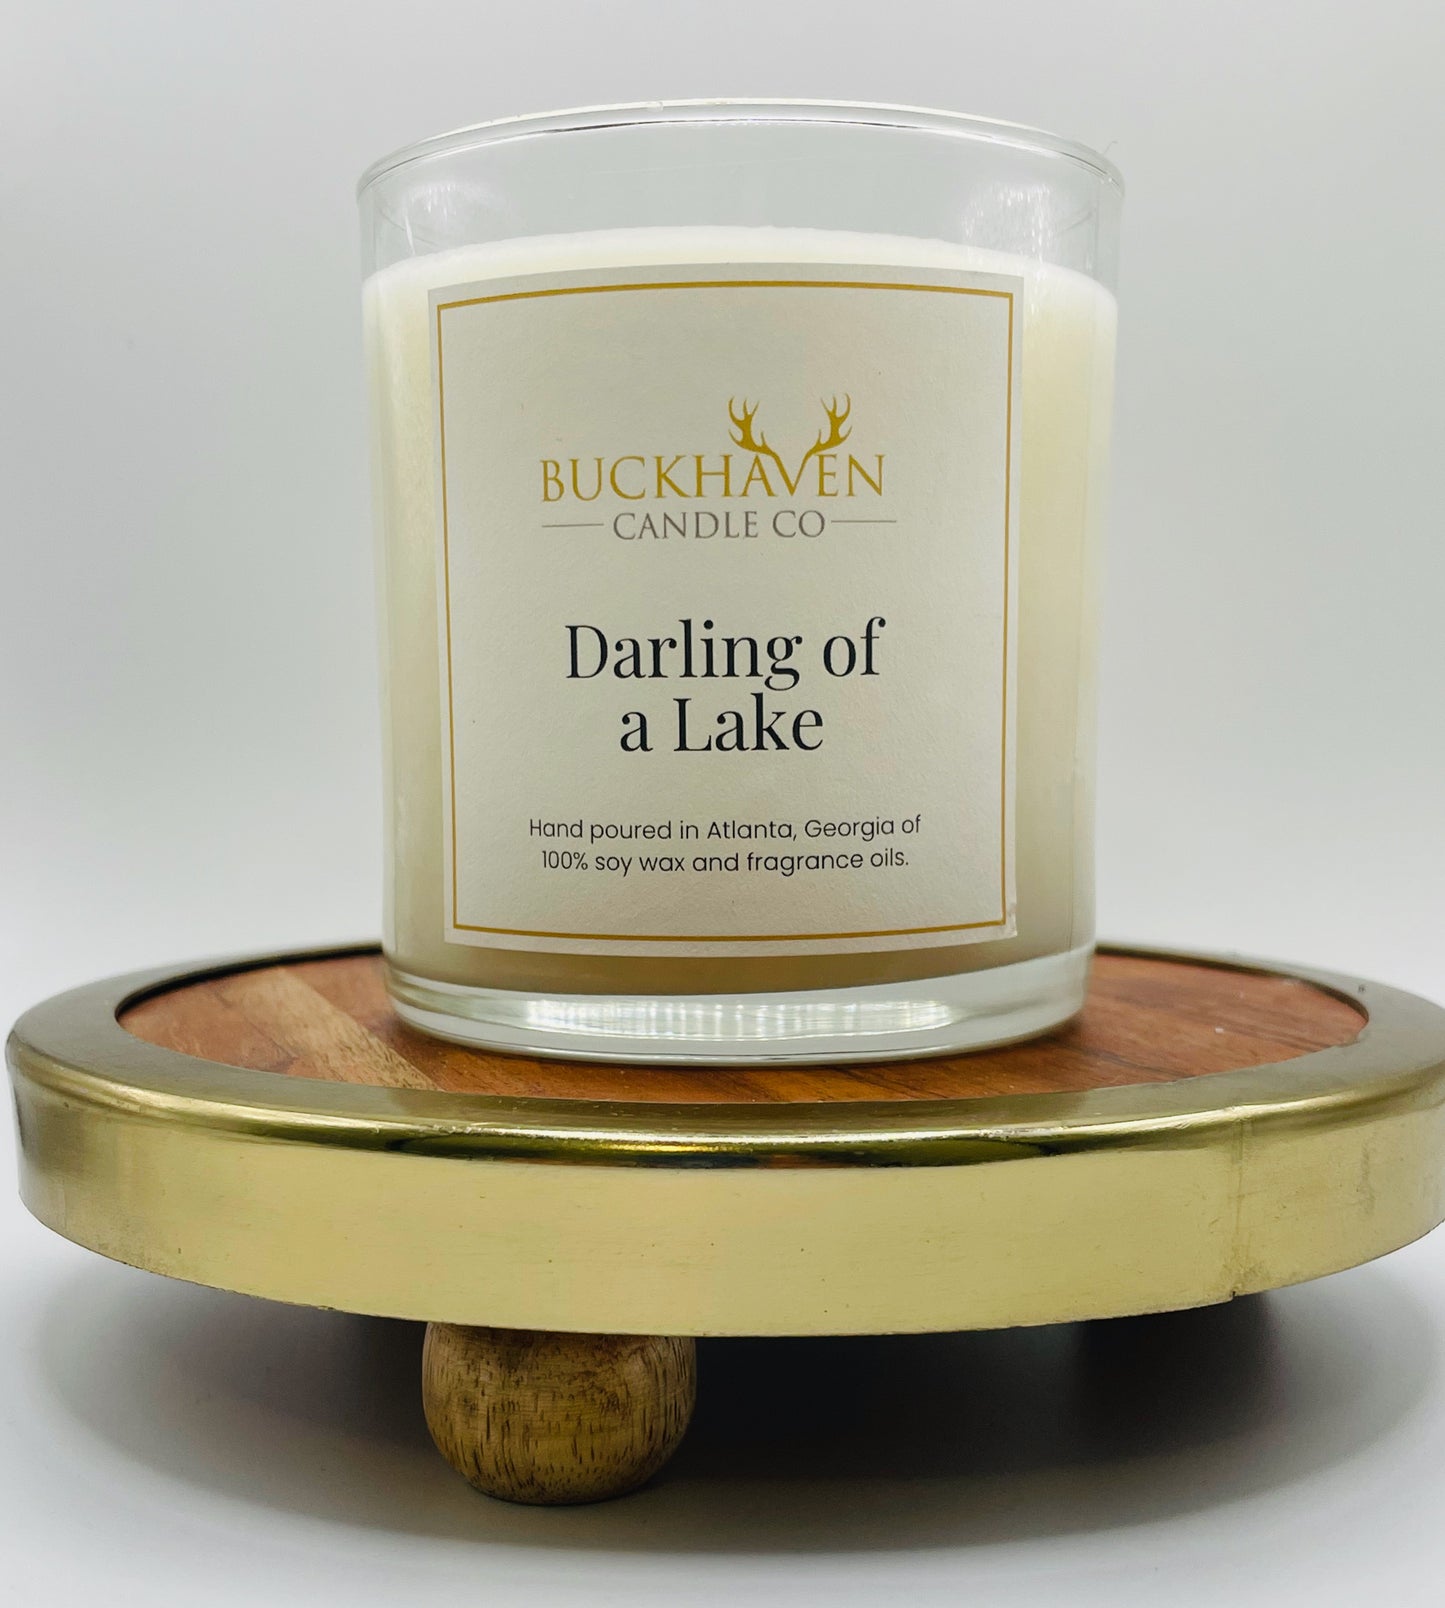 Darling of a Lake